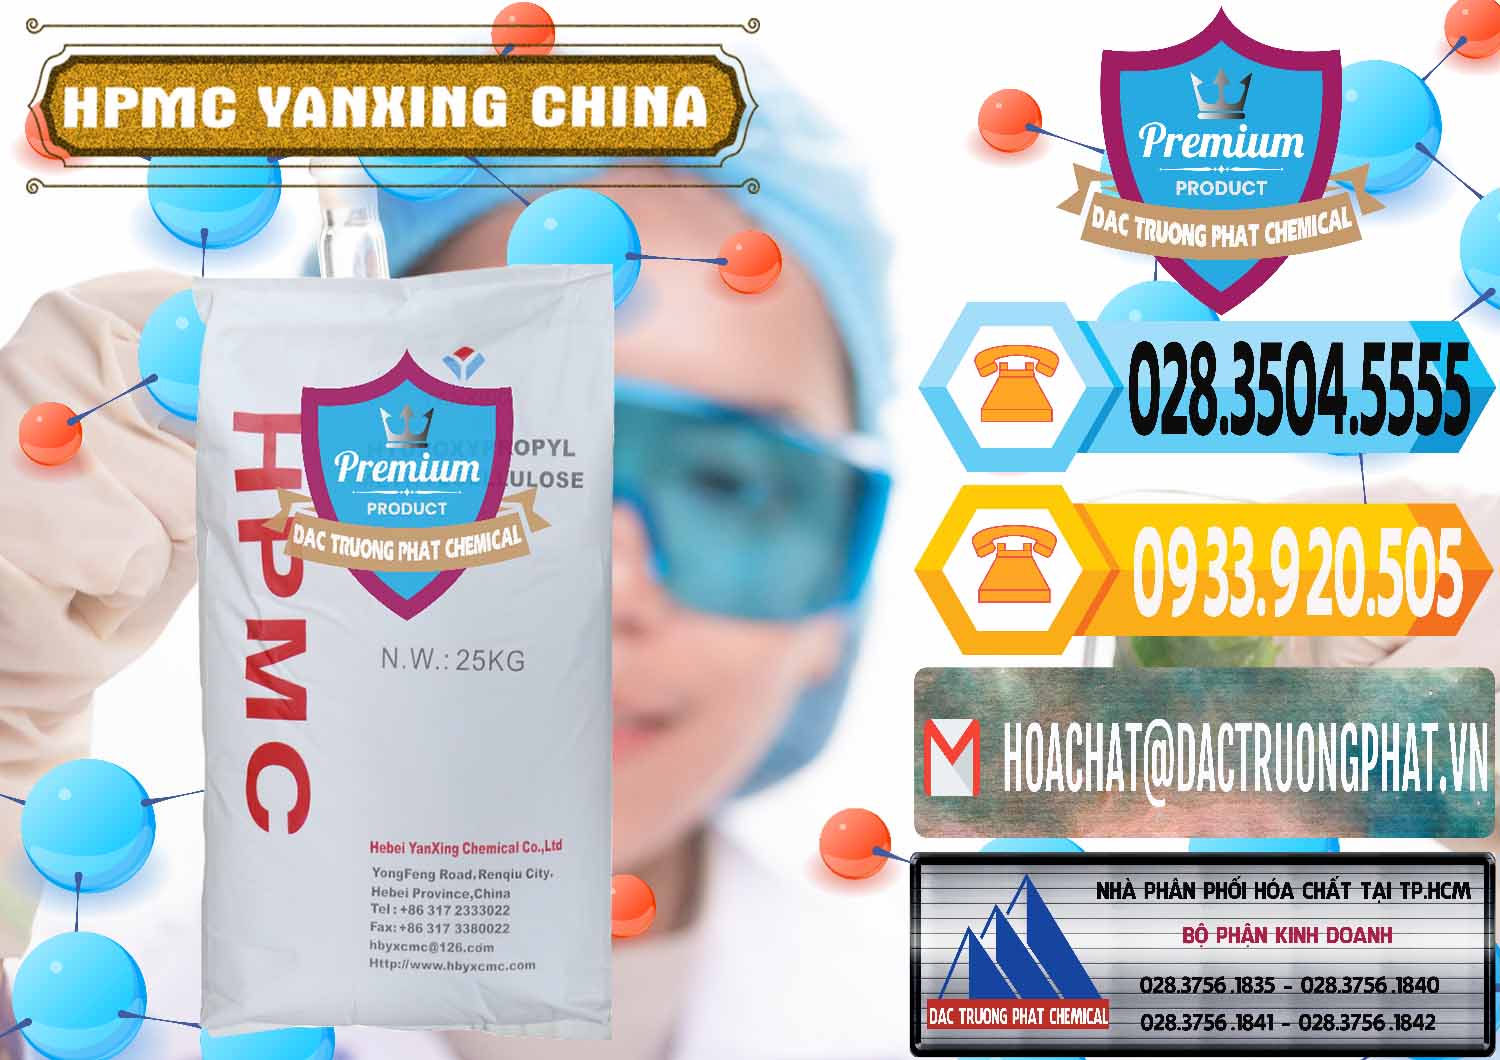 Nhà nhập khẩu _ bán Chất Tạo Đặc HPMC - Hydroxypropyl Methyl Cellulose Yanxing Trung Quốc China - 0483 - Cty chuyên phân phối và bán hóa chất tại TP.HCM - hoachattayrua.net